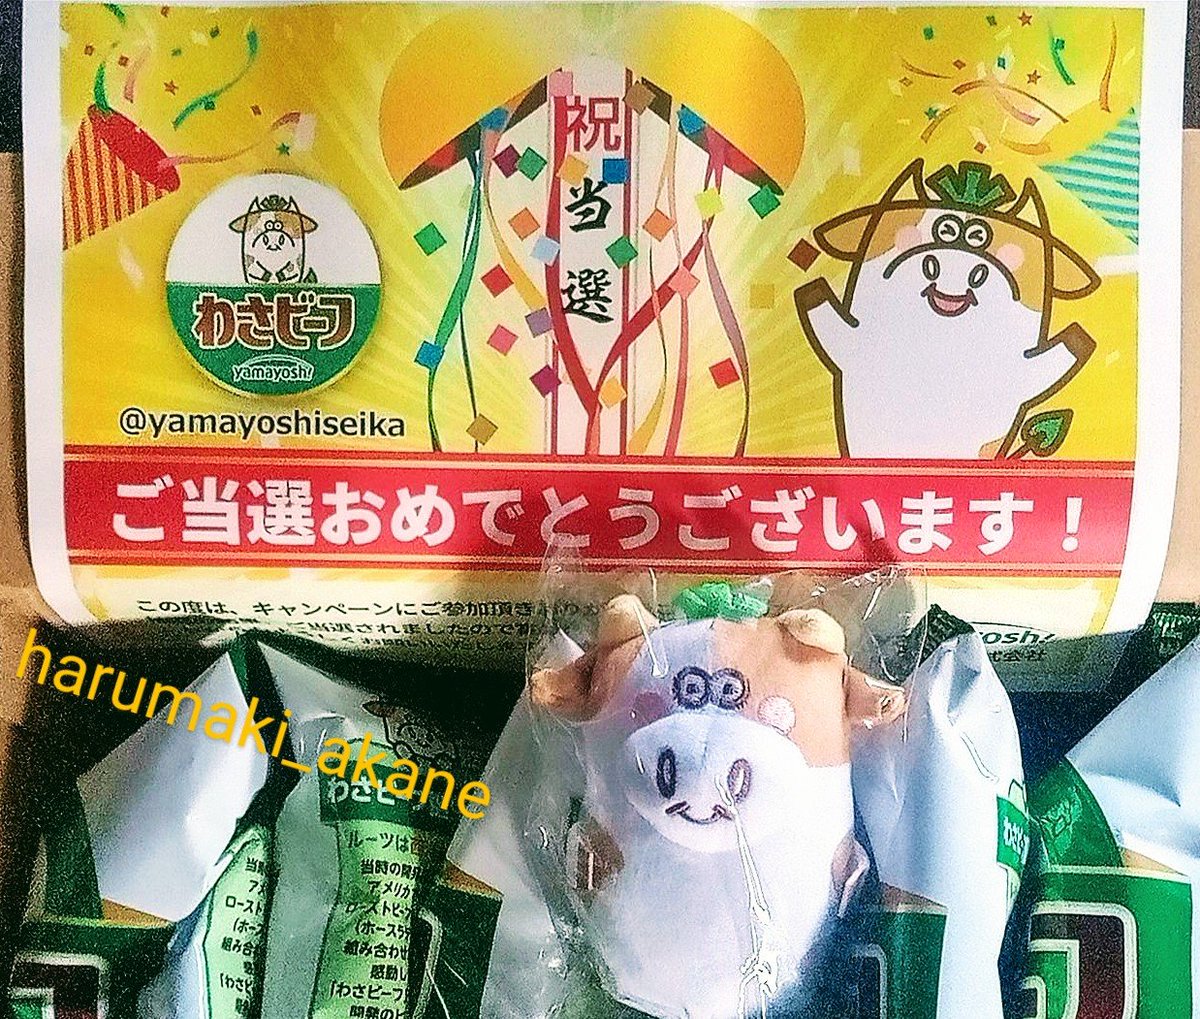 わさビーフの山芳製菓 さま
@yamayoshiseika
 
「わさビーフでわさびデビュー キャンペーン」で当選🎉
わさビーフ&わさモーのぬいぐるみをいただきました🌼
わさビーフ大好きなので！とっても嬉しいです(^ー^)
ありがとうごさいます❤